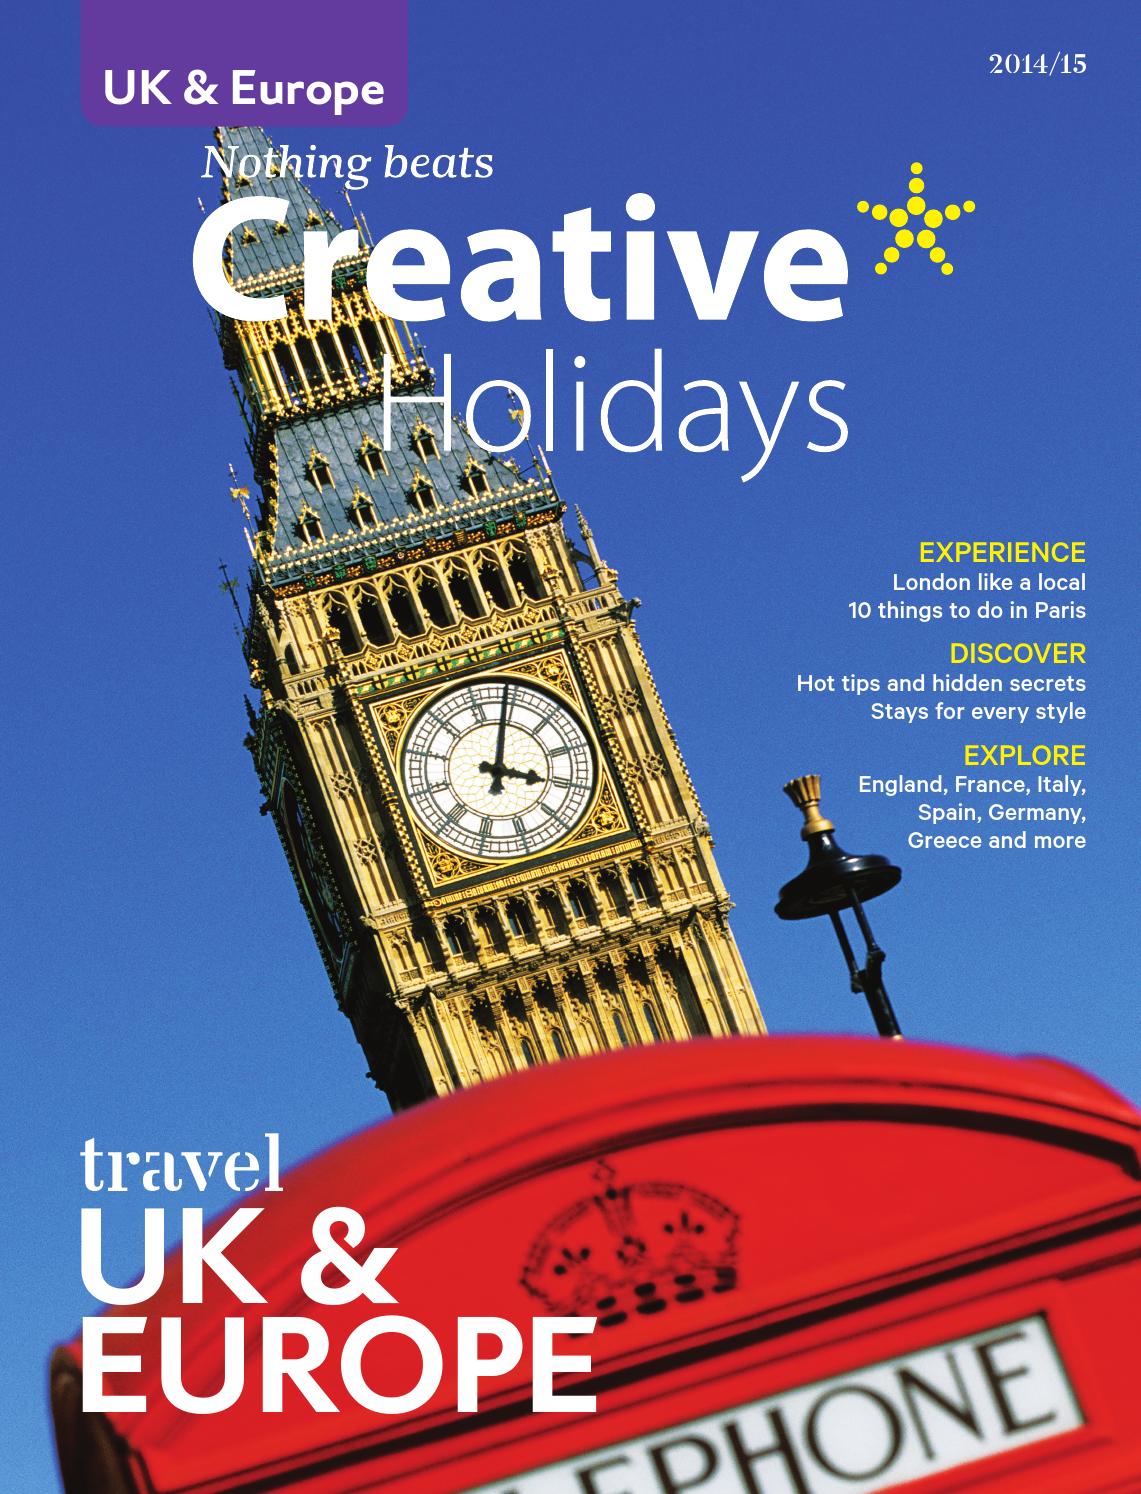 Créer Des Bacs De Jardin Avec Des Palettes Élégant Uk & Europe 2014 15 Brochure by Creative Holidays issuu